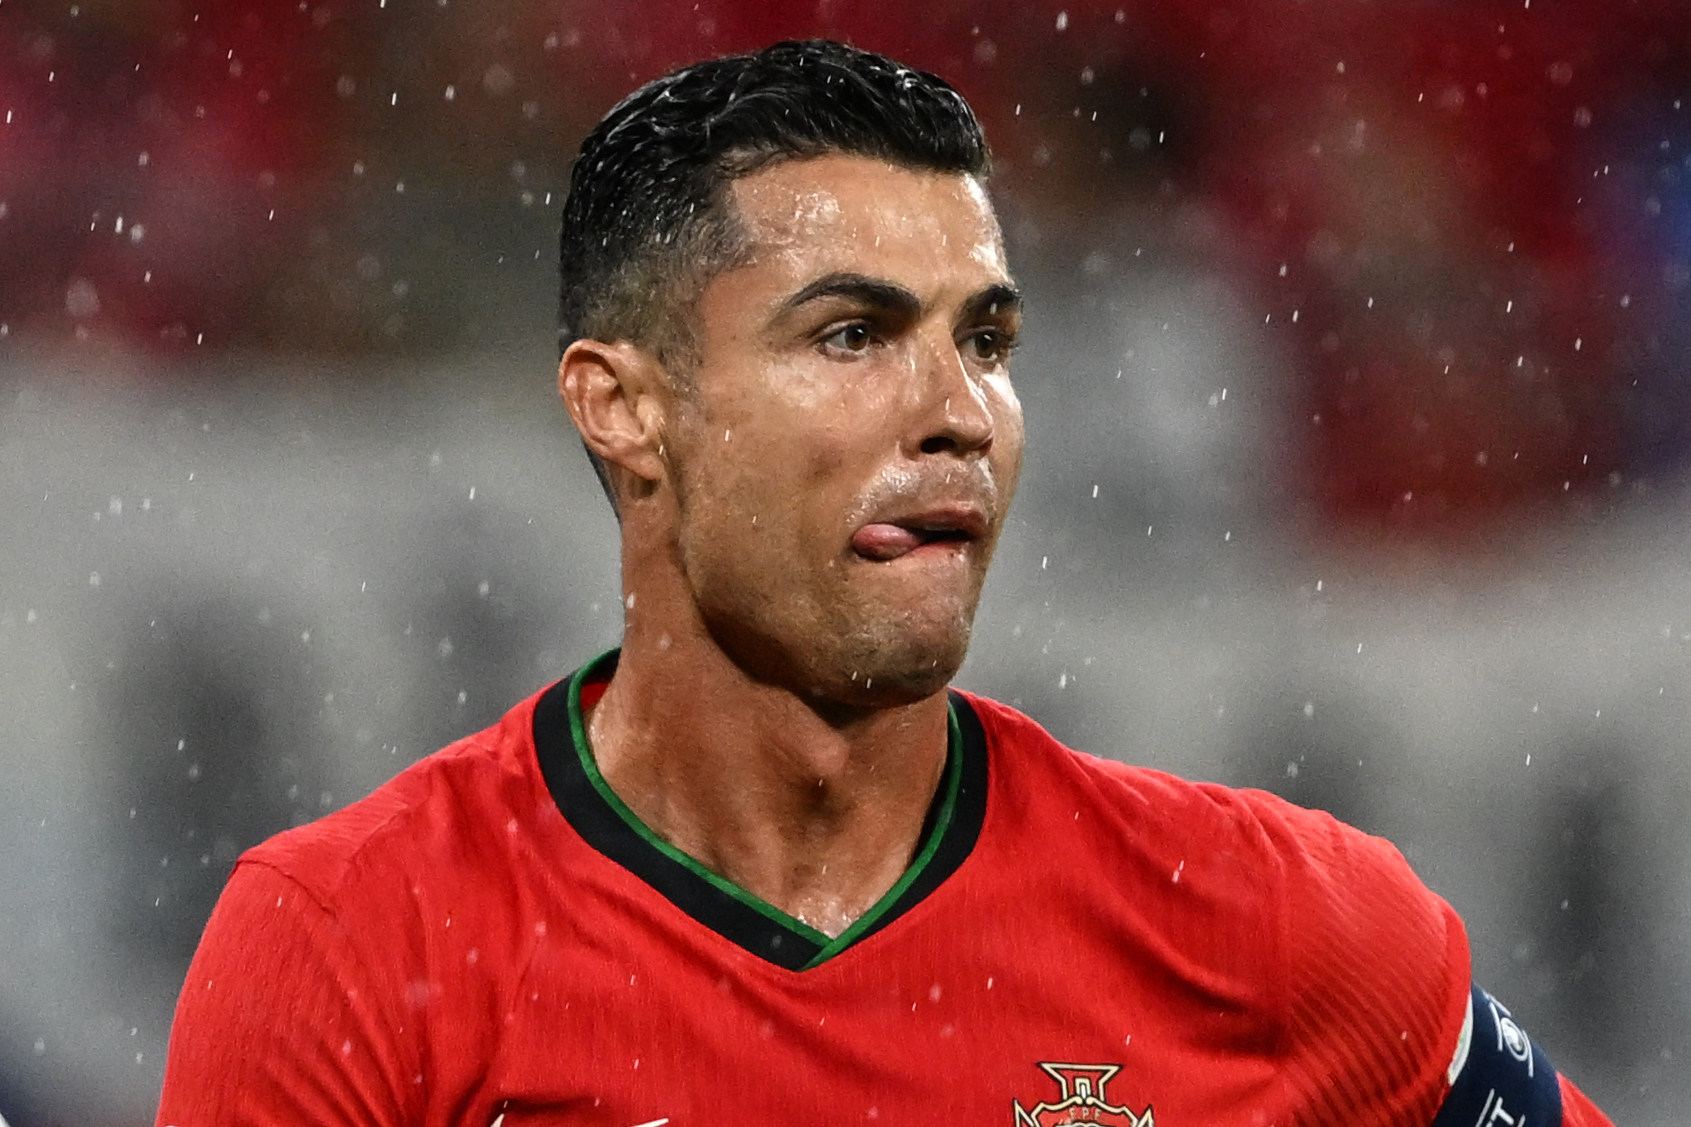 Cristiano Ronaldo's controversial lack of sportmanship